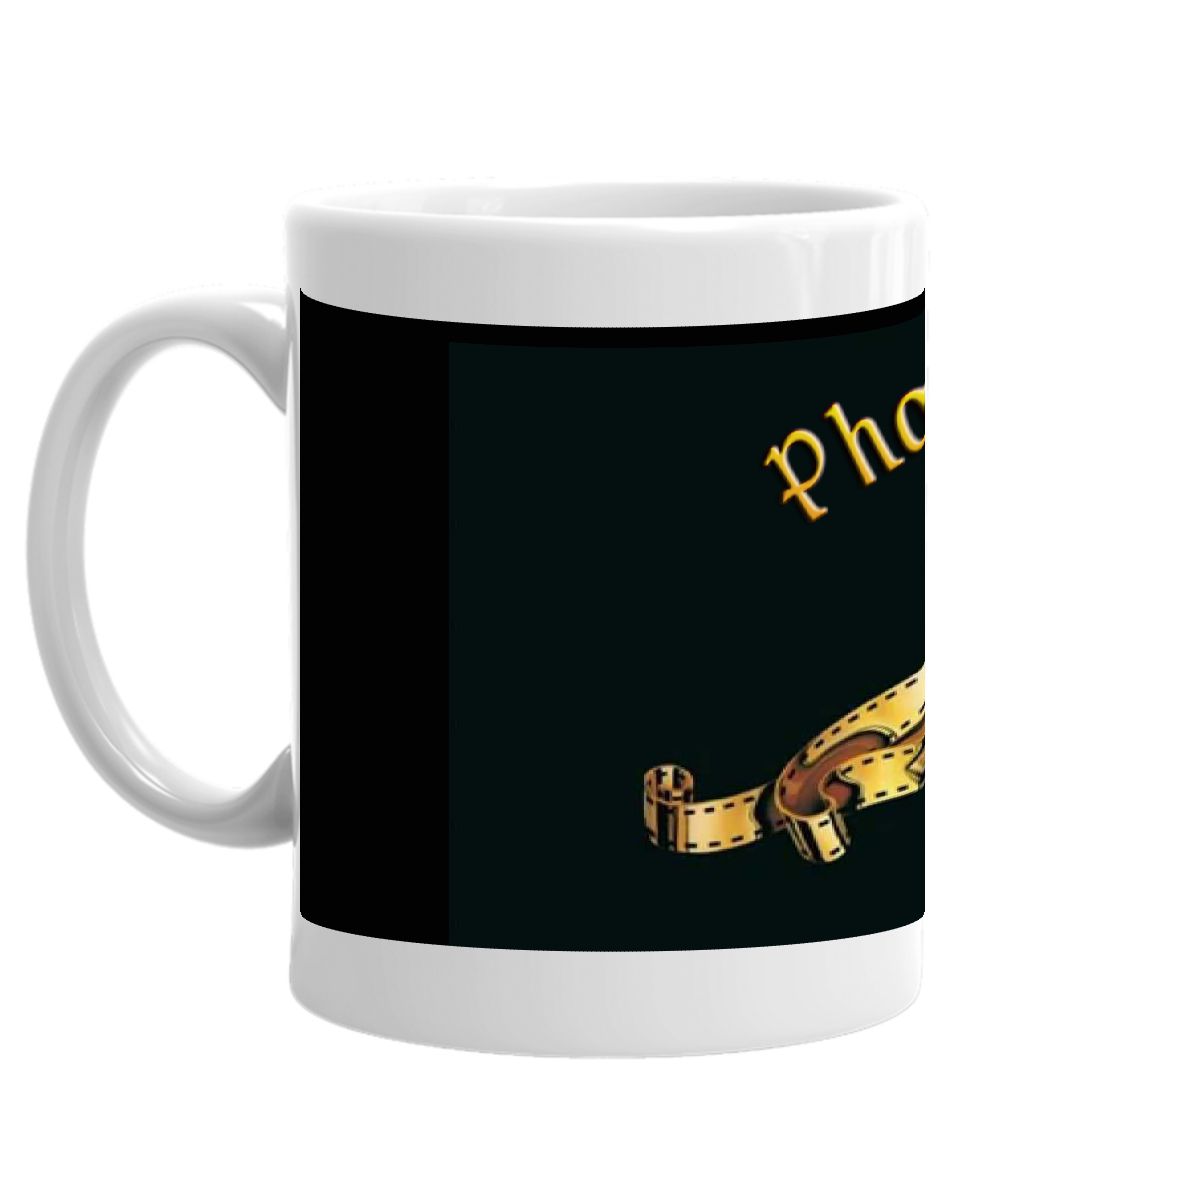 Phoebe Lion Single Roar Mug